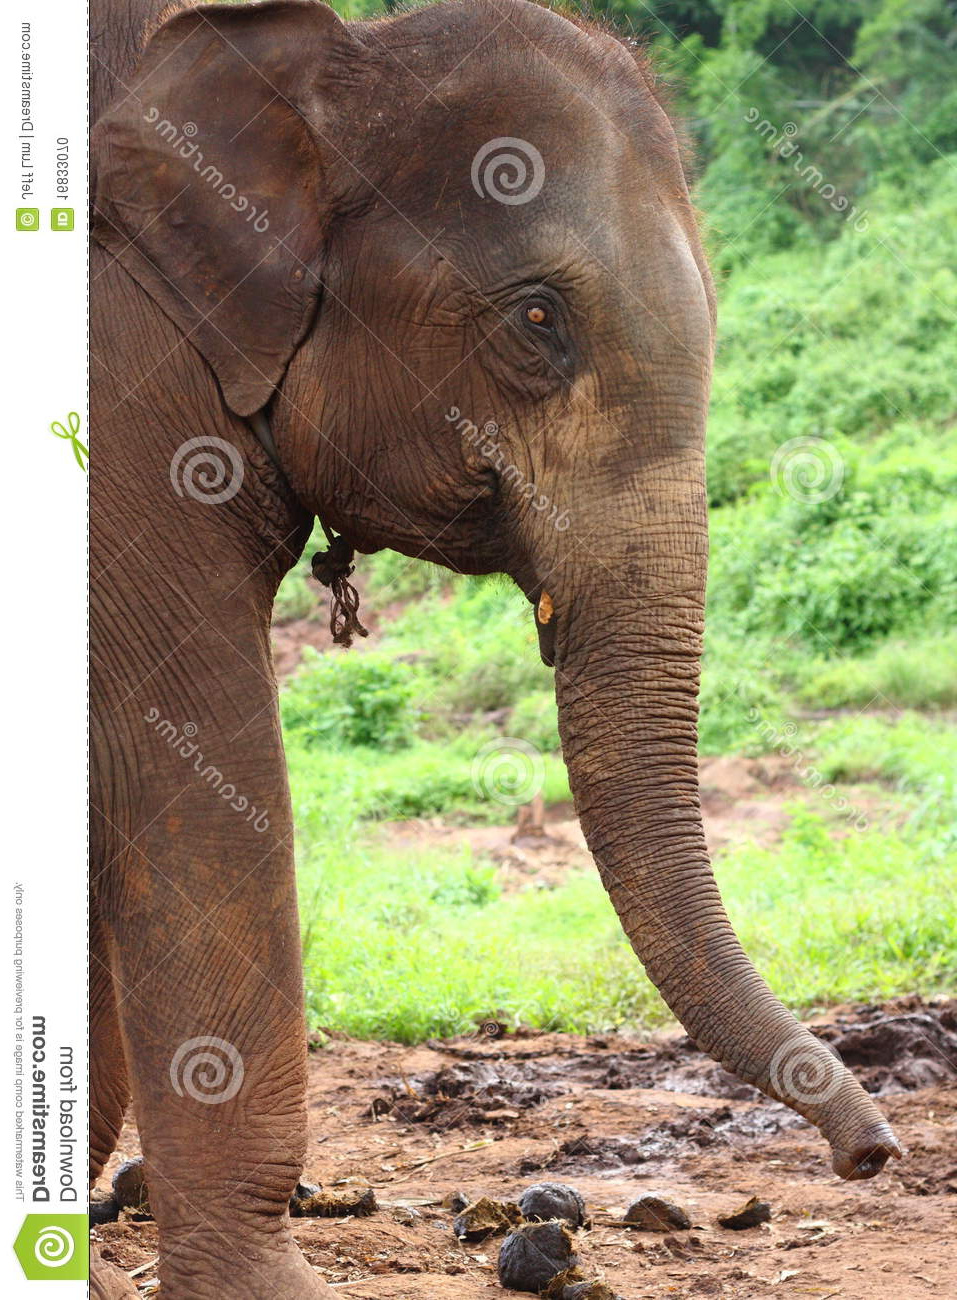 Elephant De Profil Unique Photos Profil De Tête D éléphant Photo Stock Image Du Laos